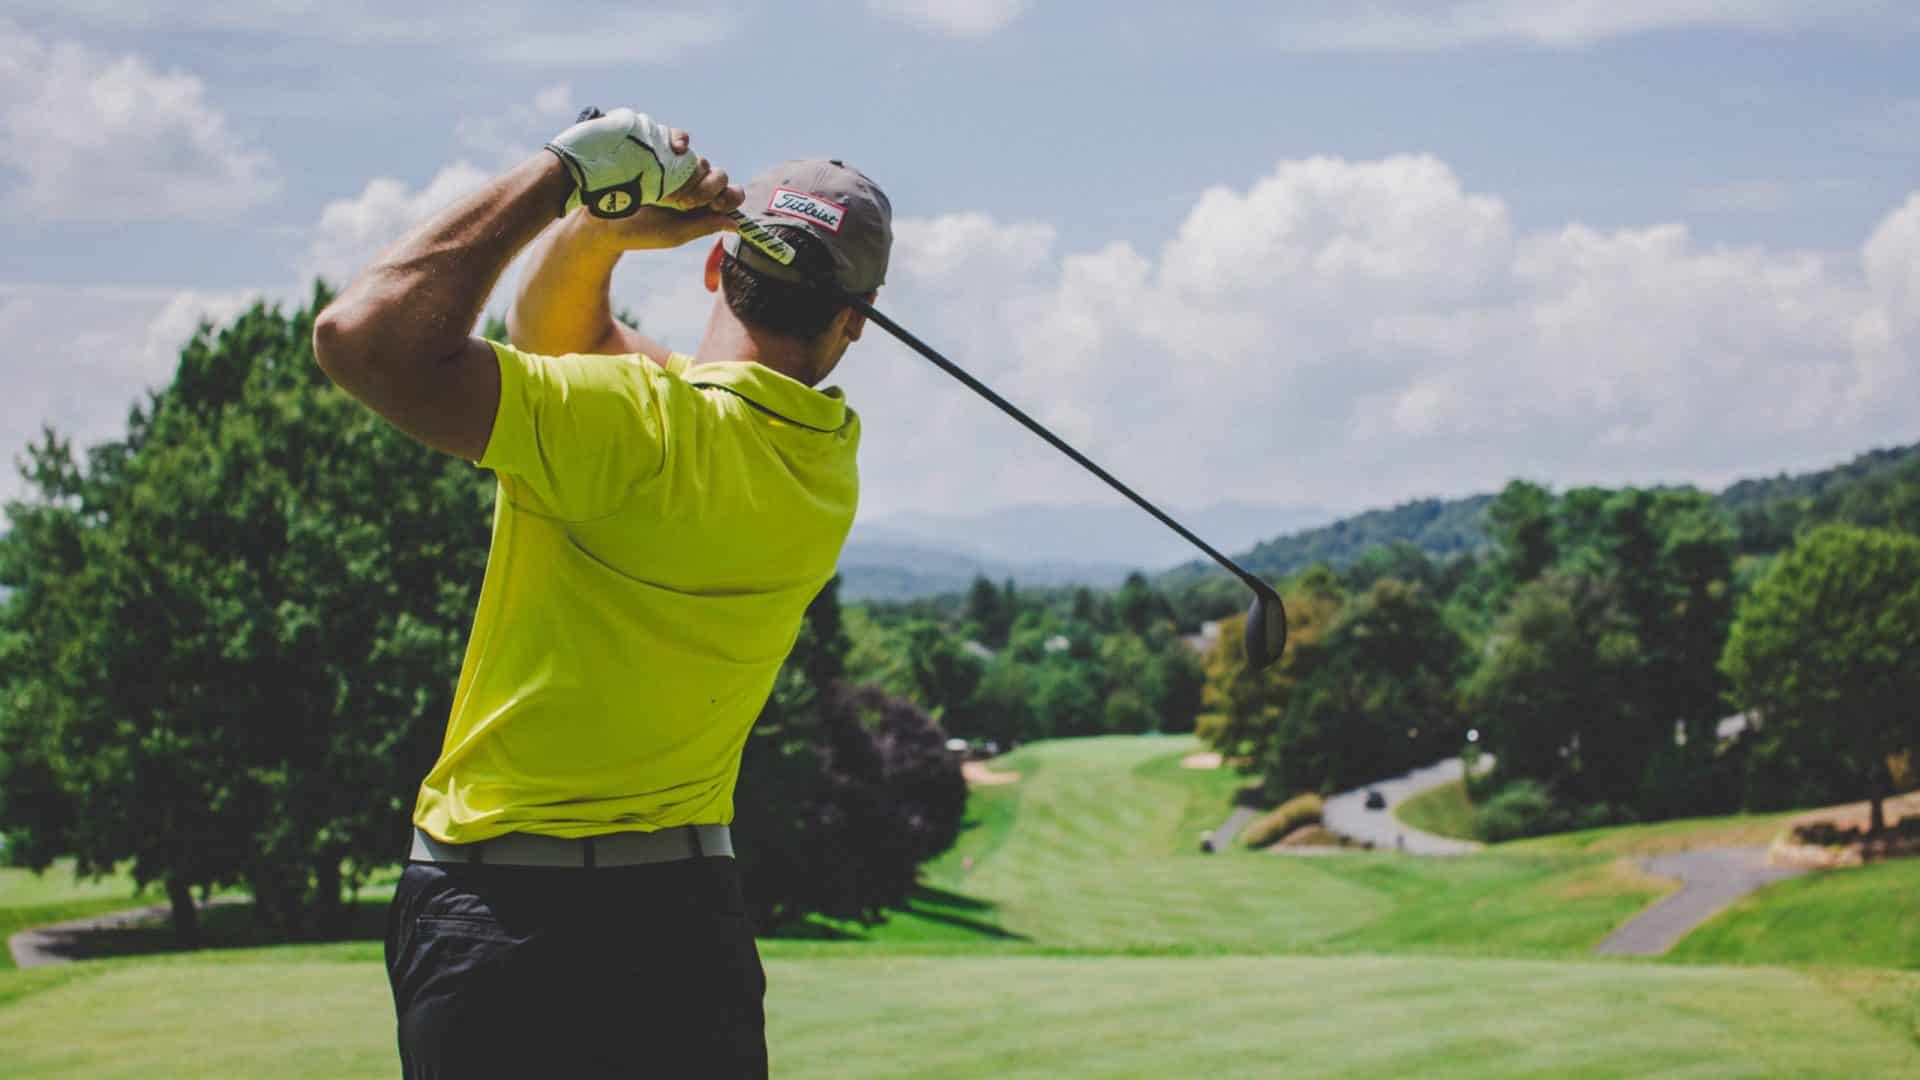 Man swinging a golf club on a green golf course